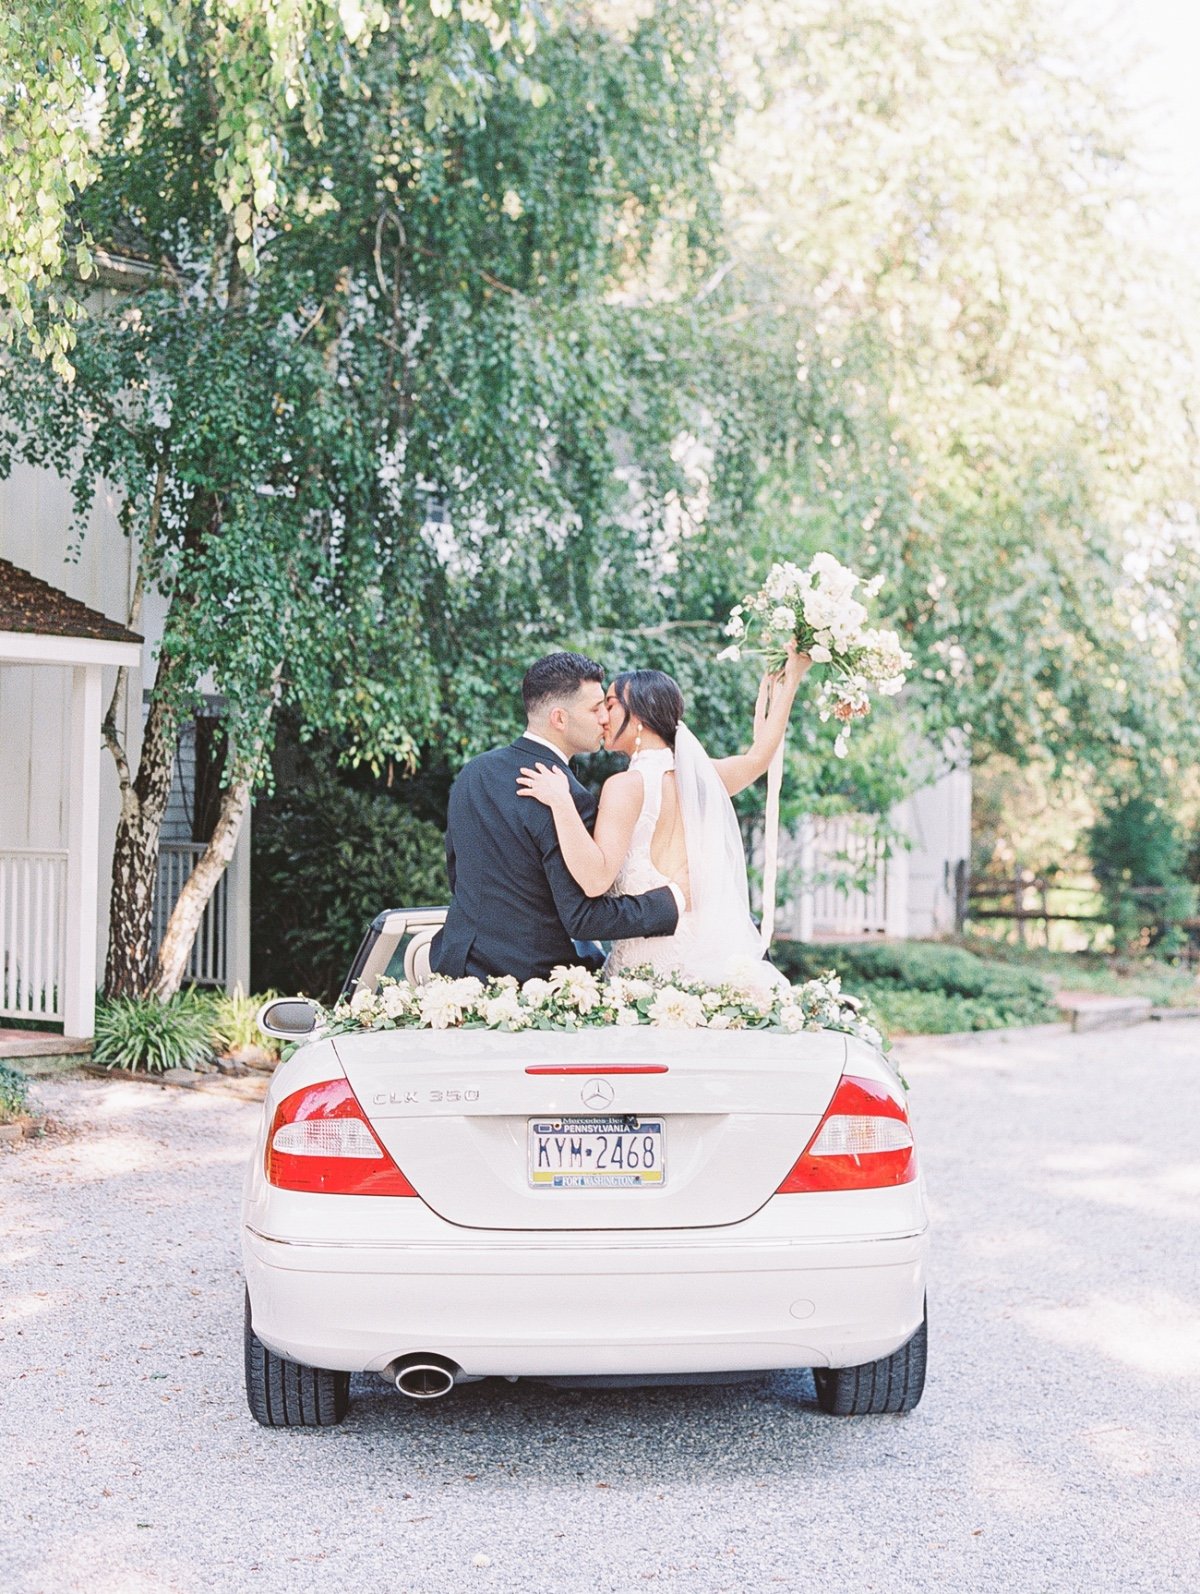 An Elegant Summer Micro Wedding With A Stunning Getaway Car Sendoff